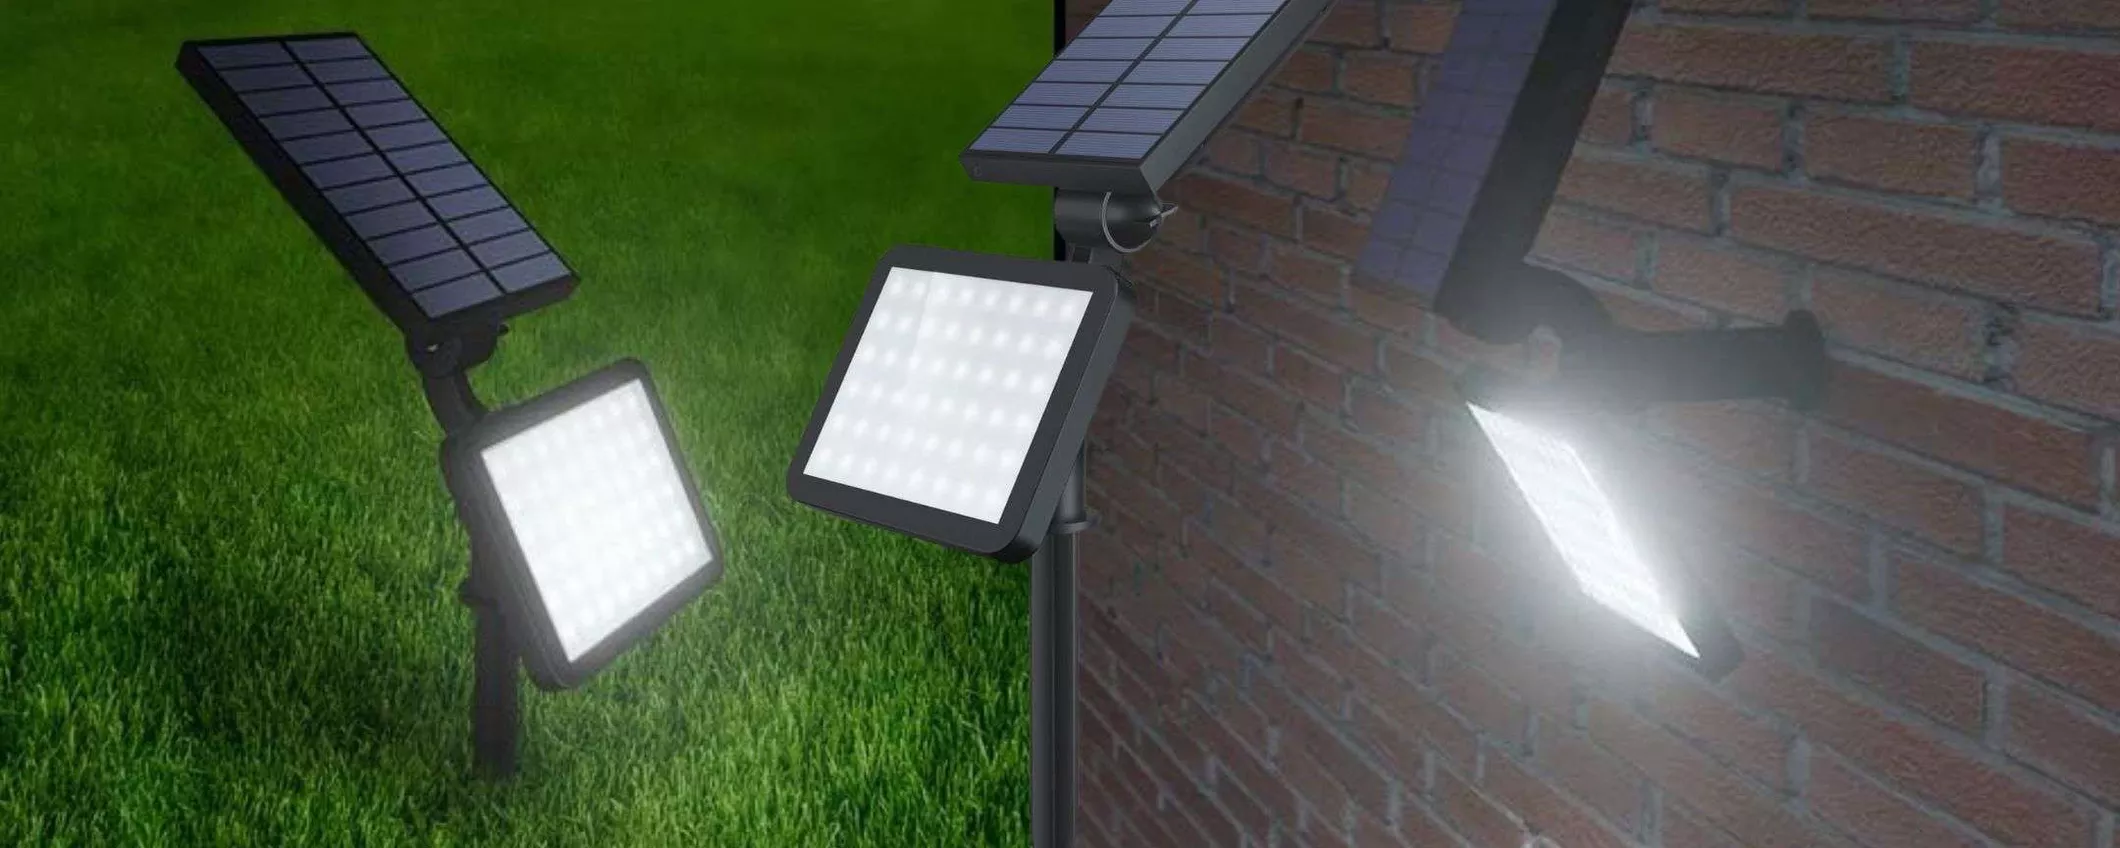 Faro solare con paletto a 6,99€ su Amazon: ERRORE o prezzaccio?